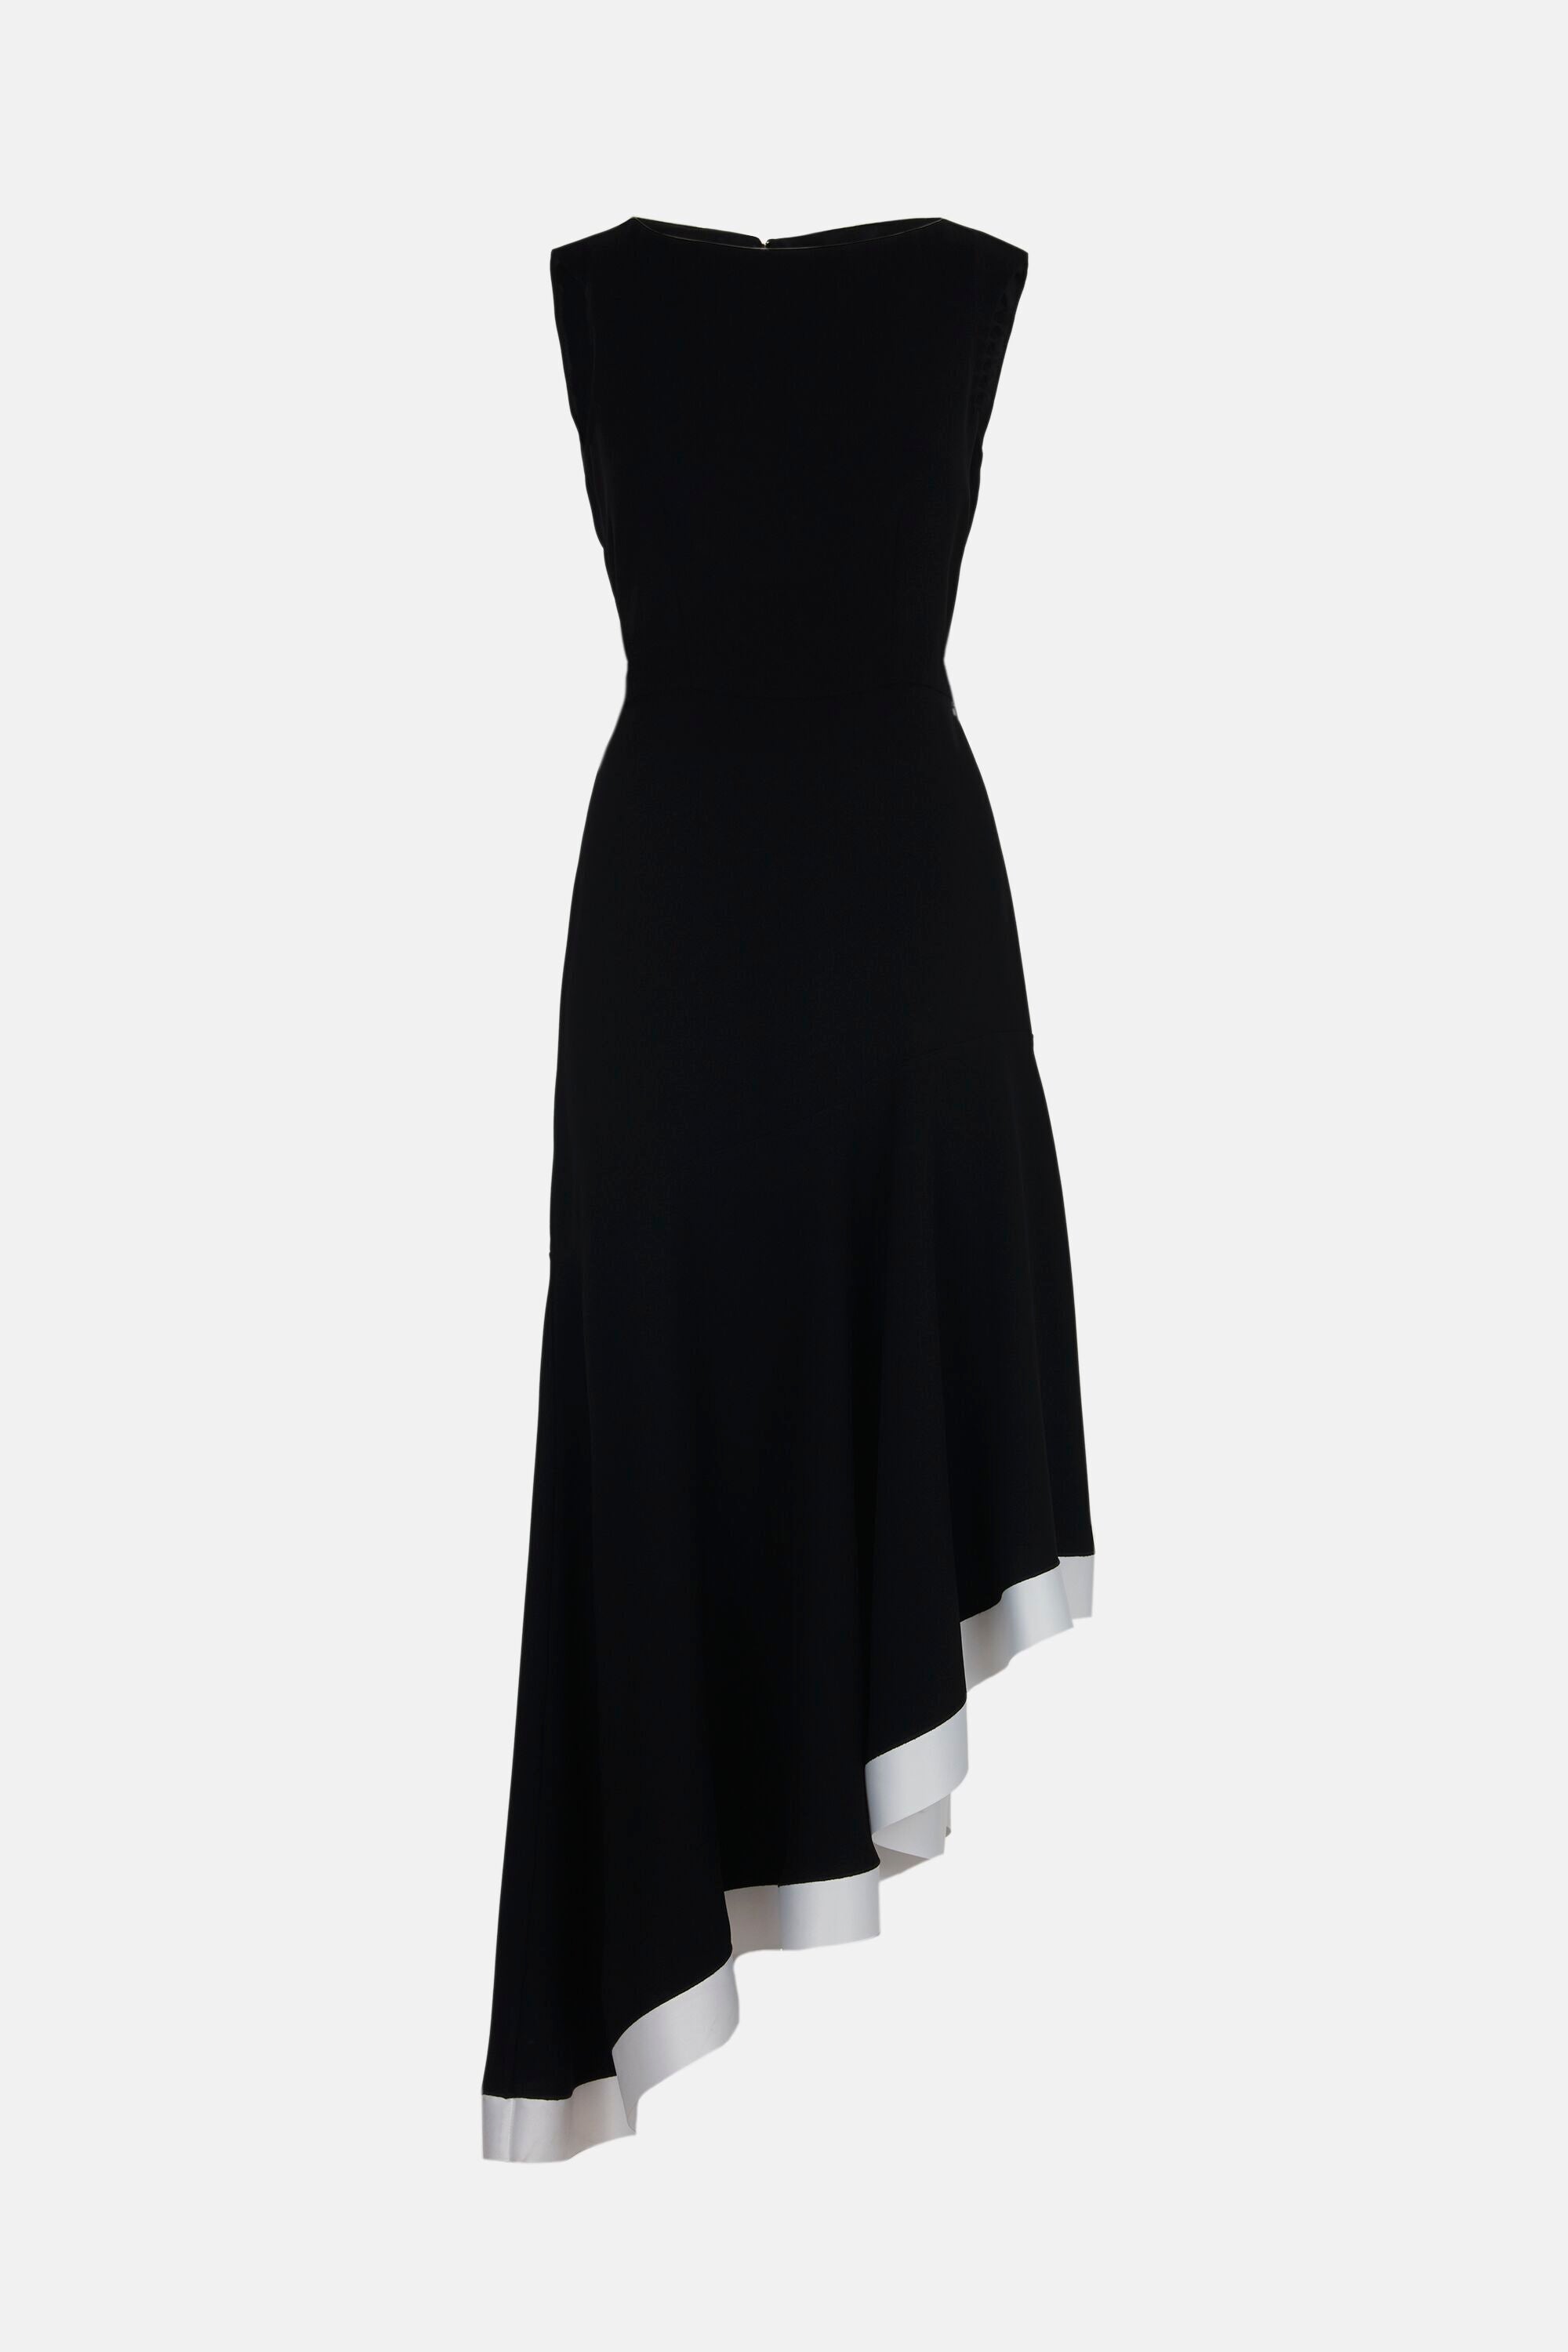 Ruffled crepe fitted dress black - CH Carolina Herrera United Kingdom